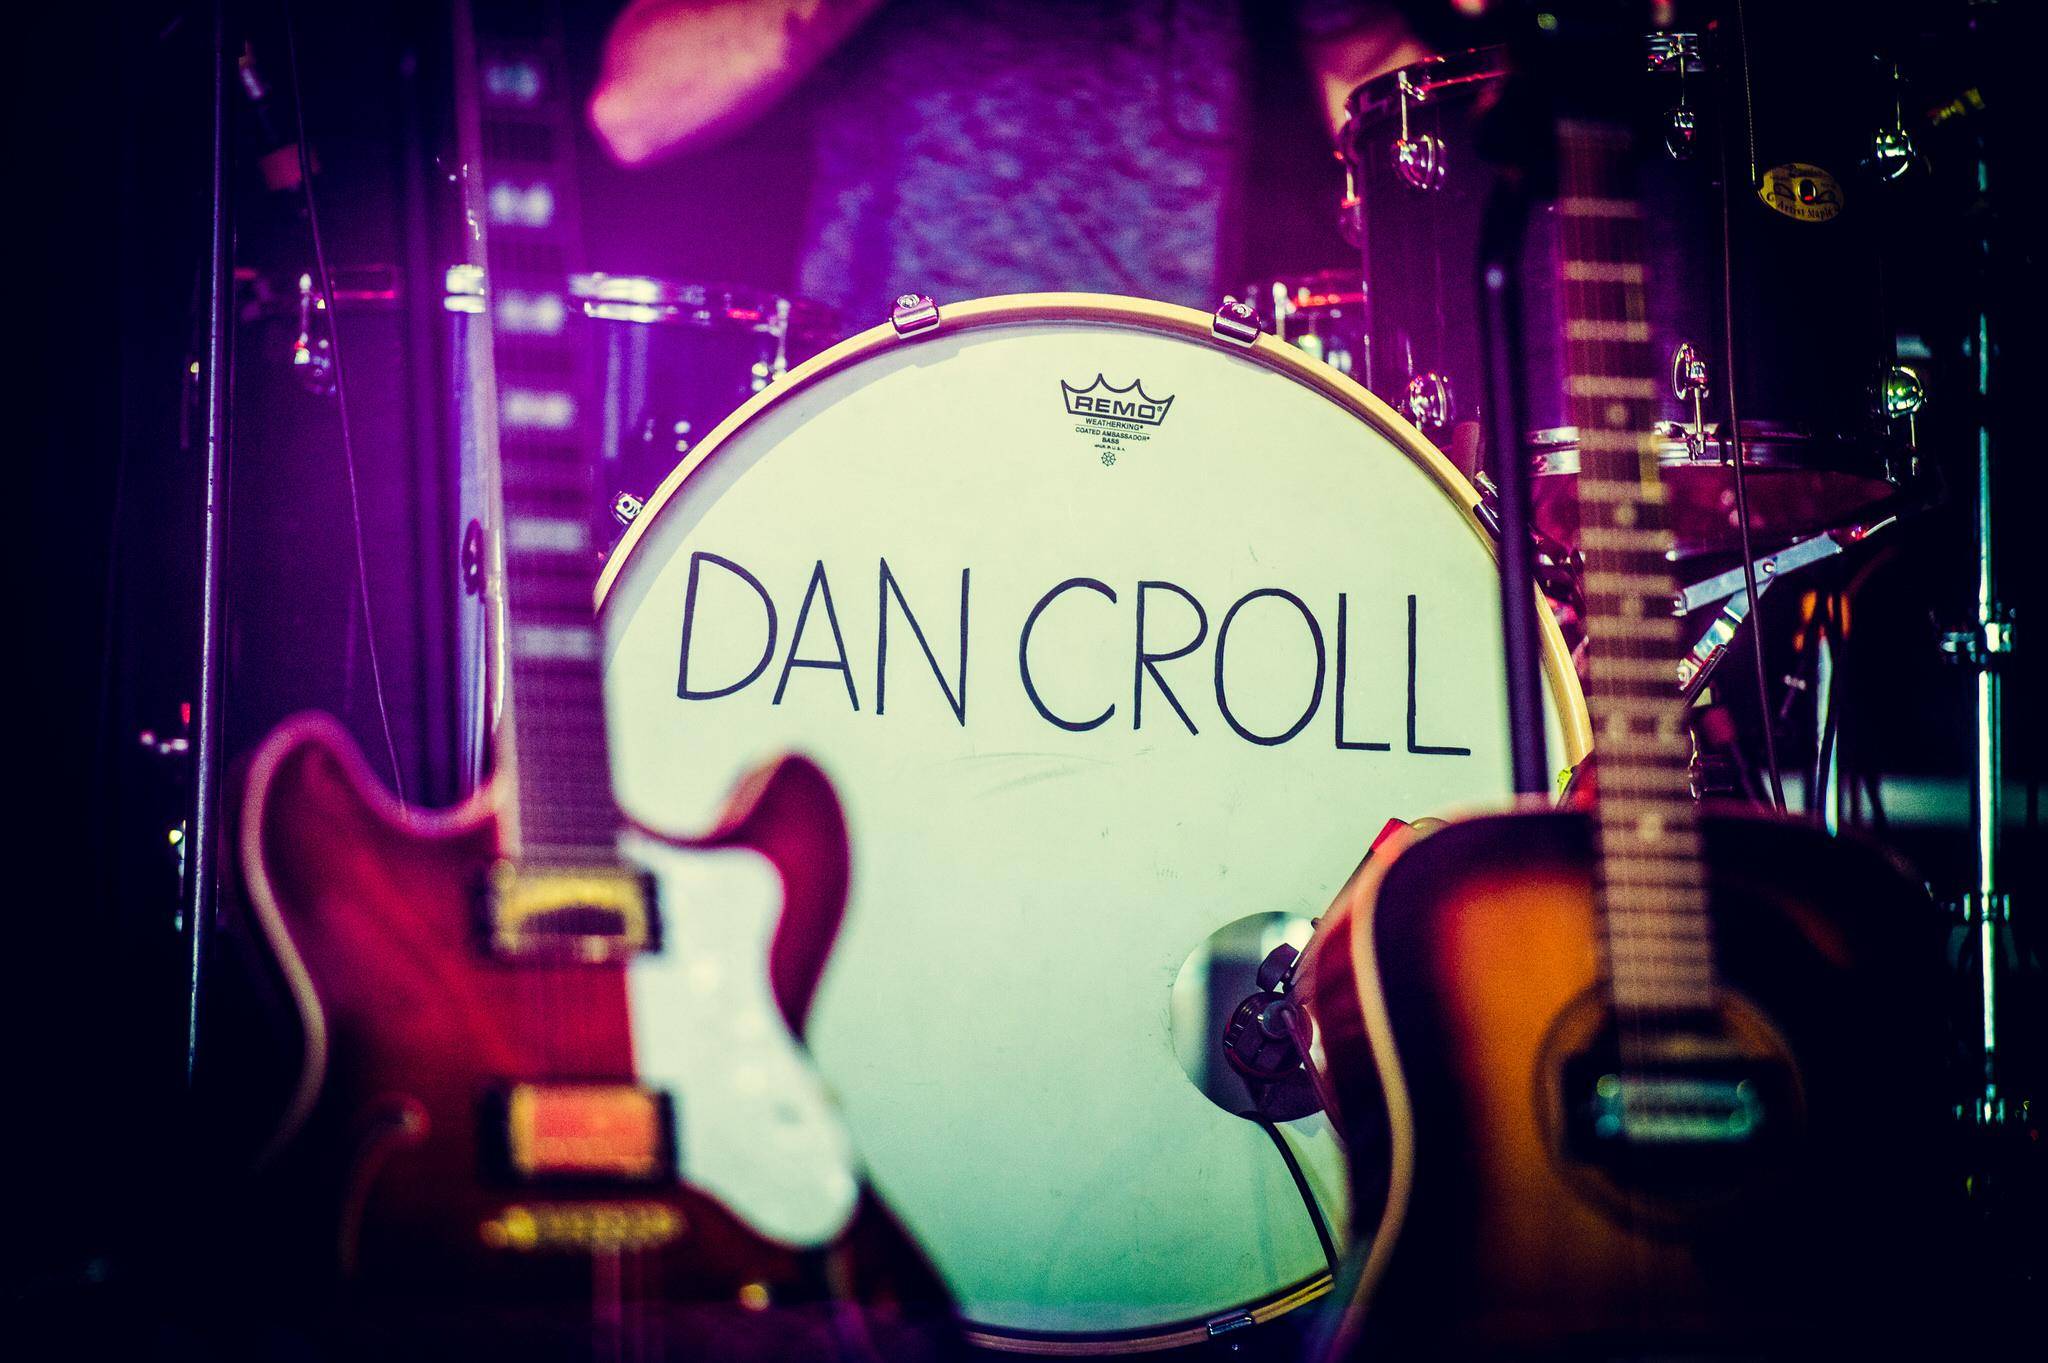 Dan Croll